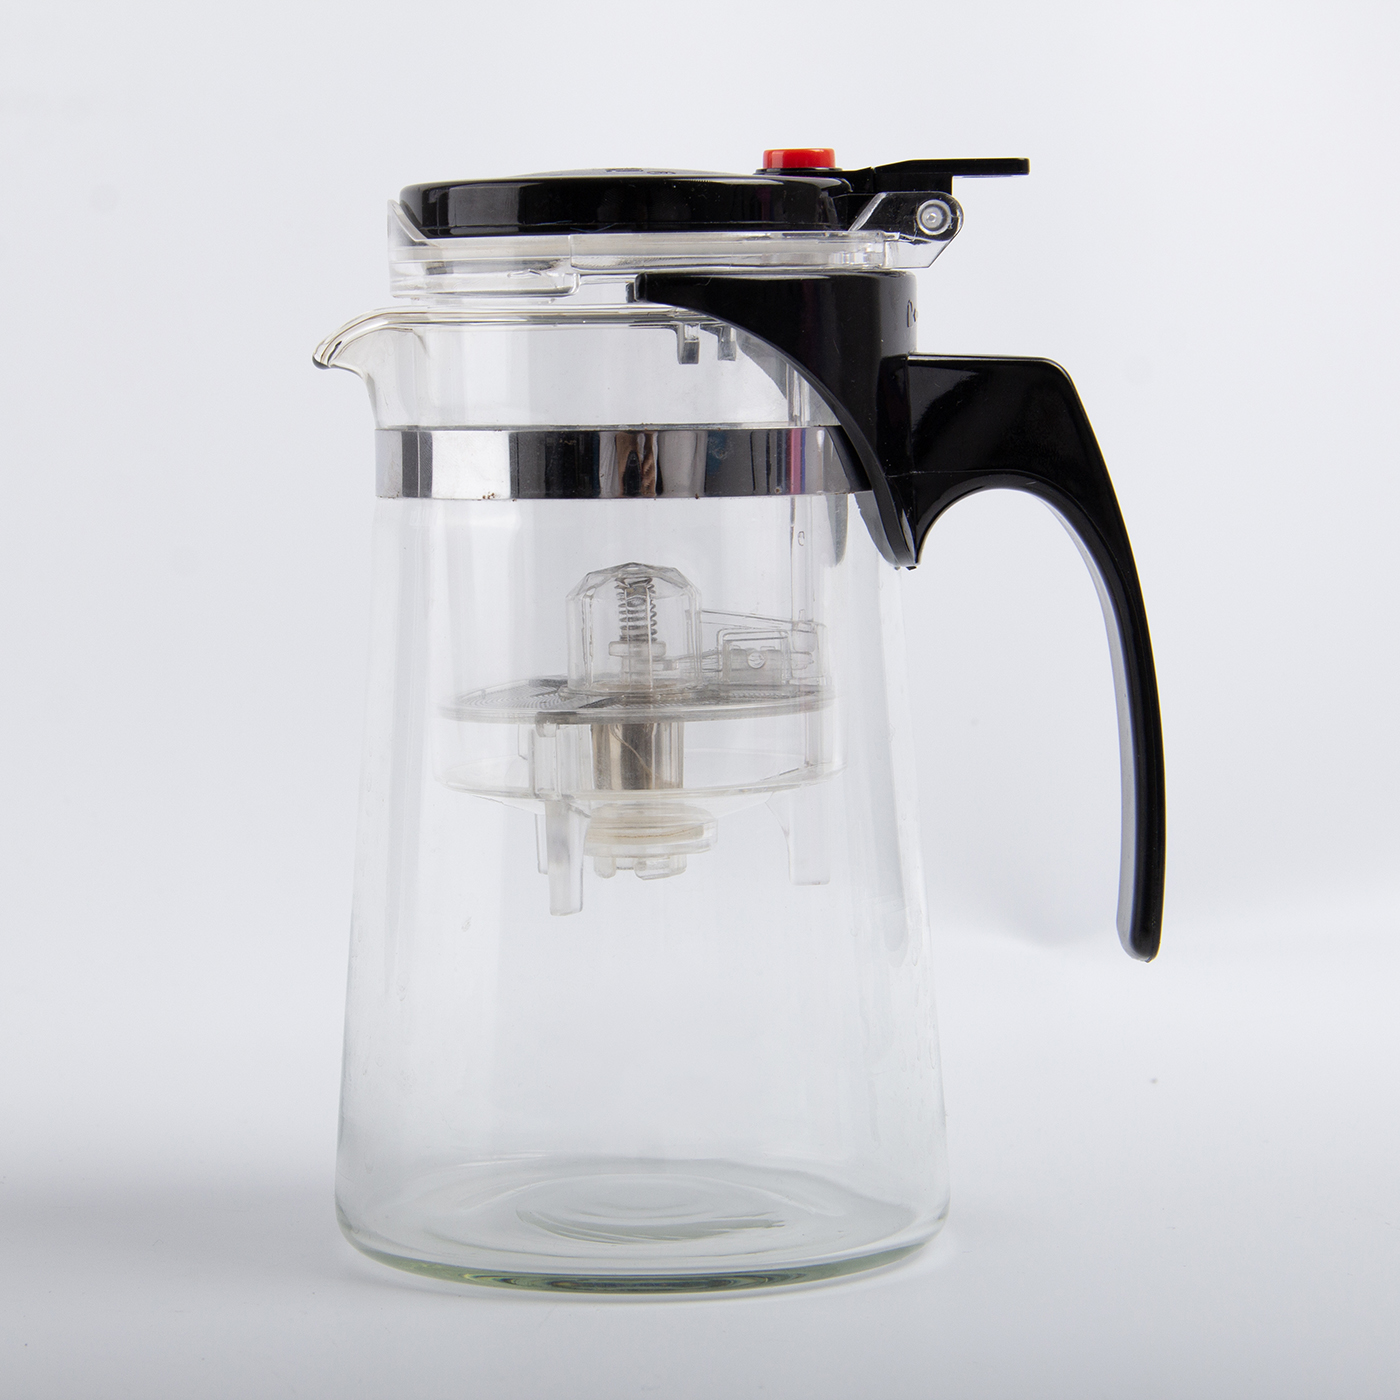 750ml Glass Tea Pot With Filter3